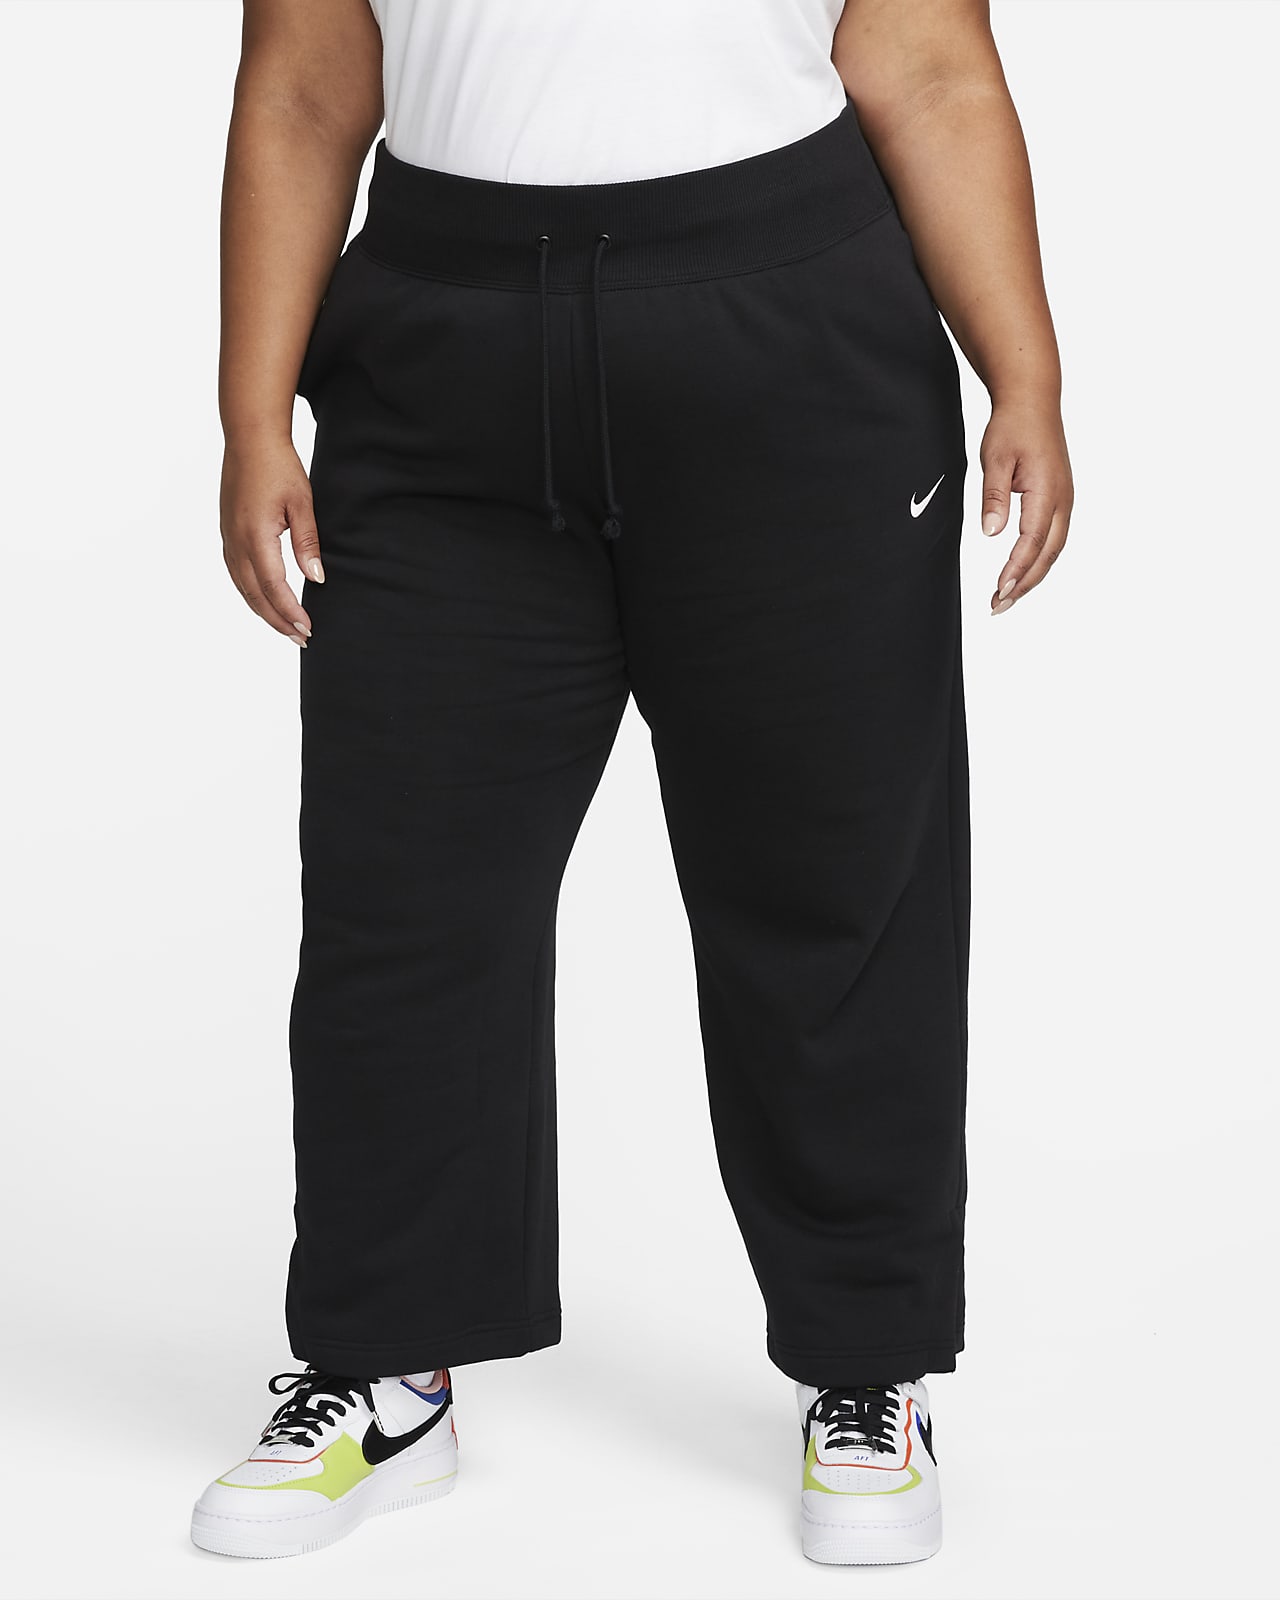 Damskie spodnie dresowe z wysokim stanem i szerokimi nogawkami Nike Sportswear Phoenix Fleece (duże rozmiary)